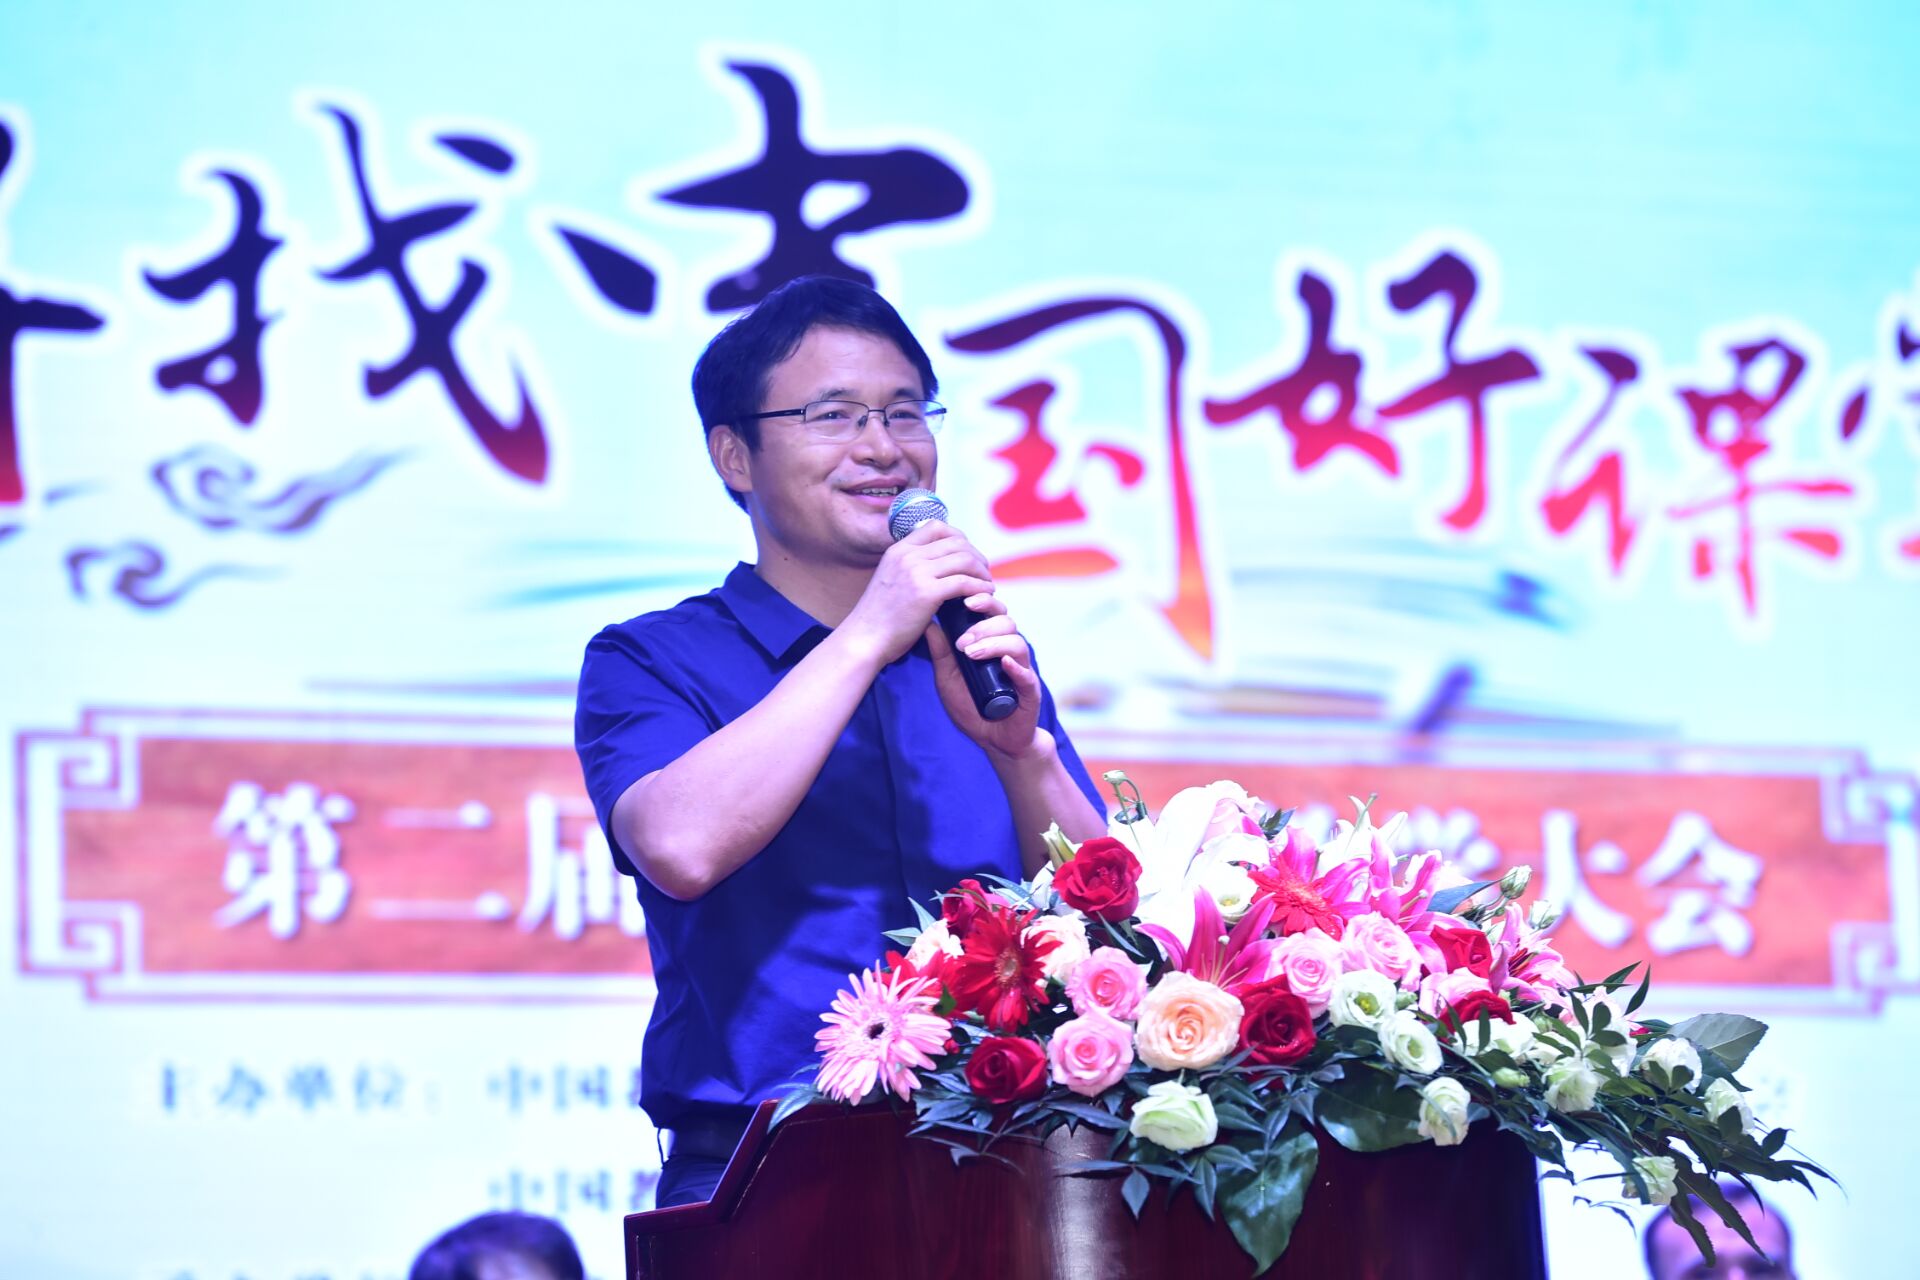 湖南省特级教师、长沙市怡雅中学校长王良正在做报告《让诗歌意义流动起来》。